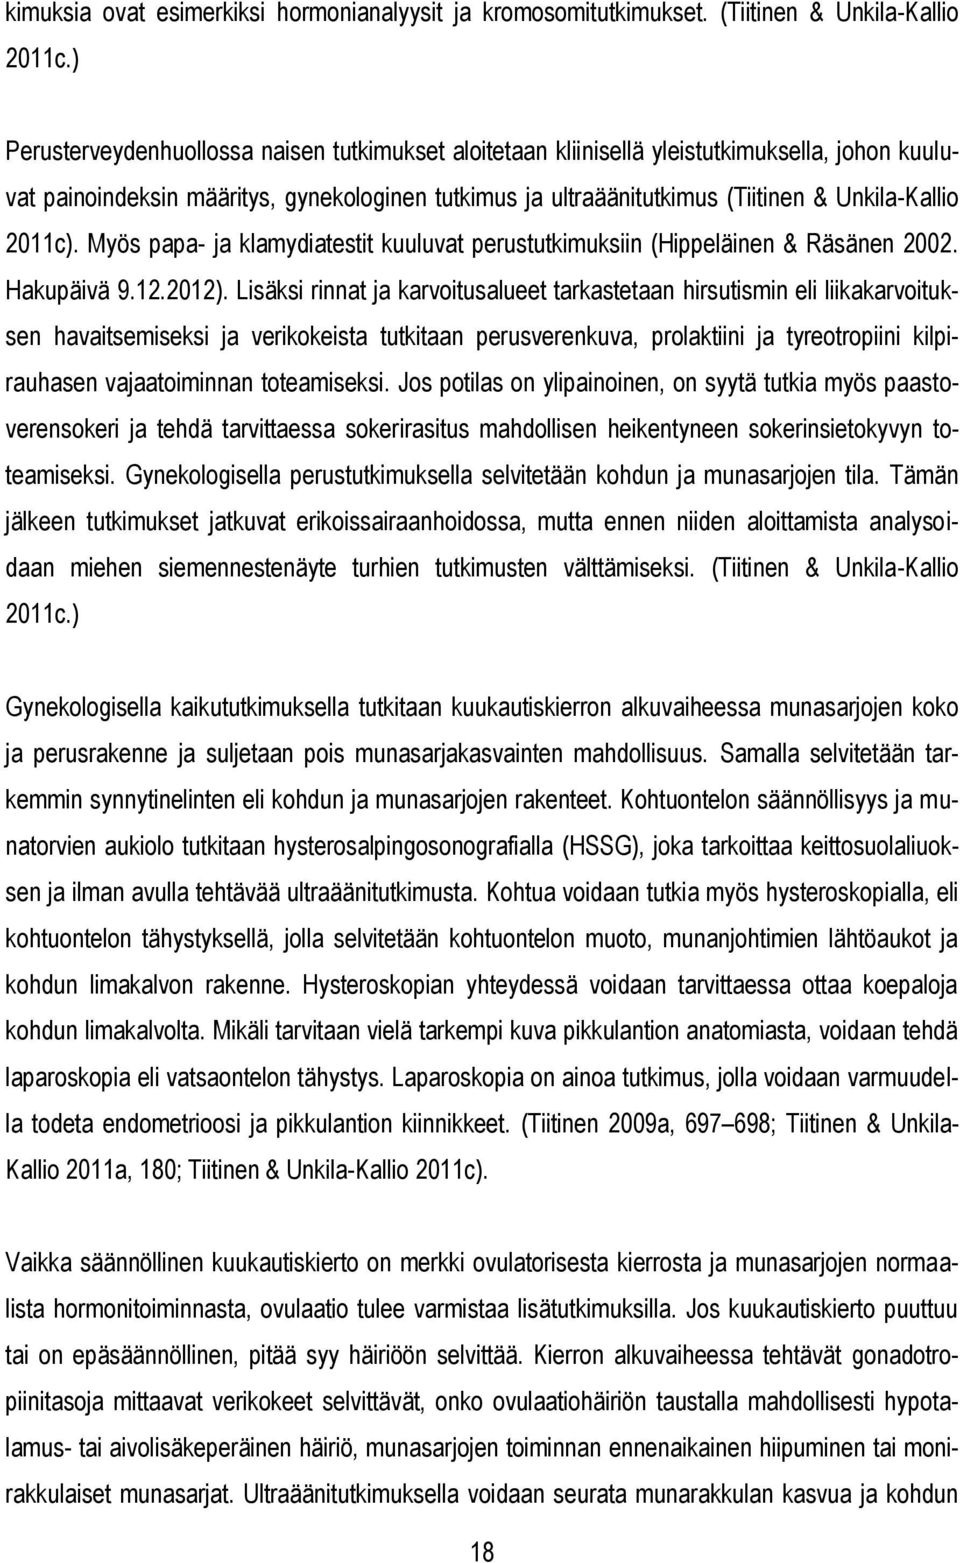 2011c). Myös papa- ja klamydiatestit kuuluvat perustutkimuksiin (Hippeläinen & Räsänen 2002. Hakupäivä 9.12.2012).